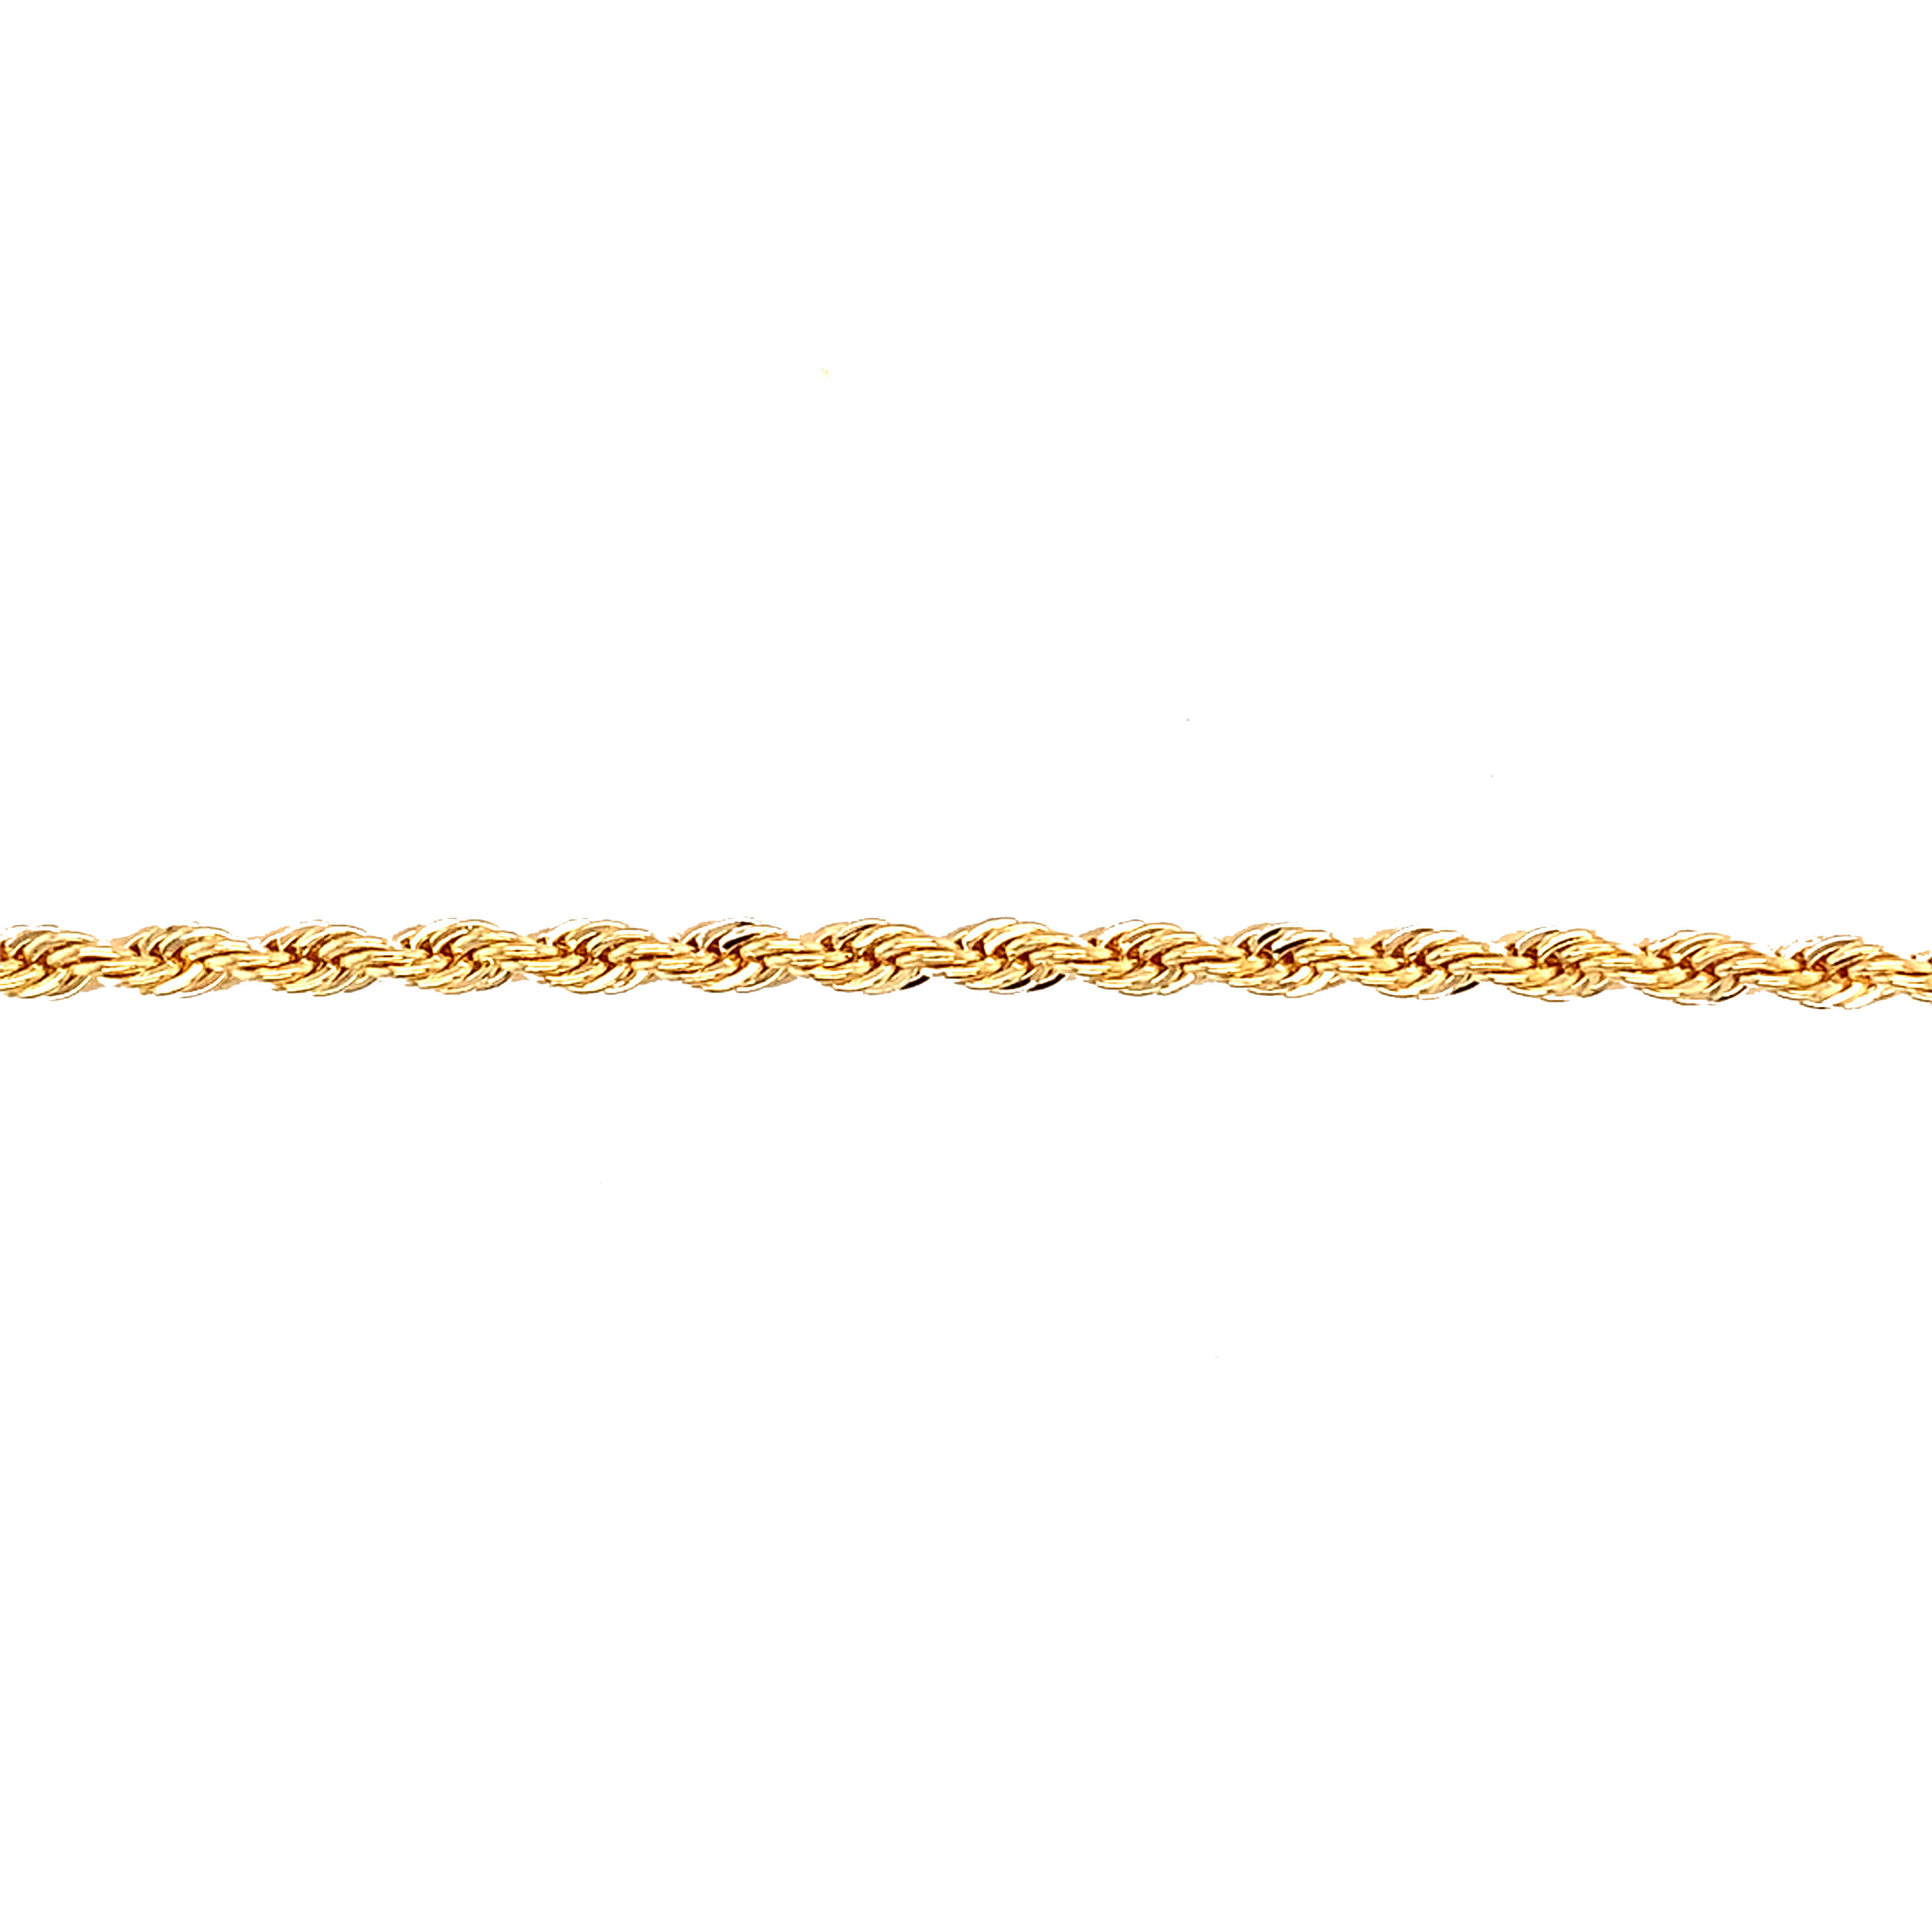 3mm Rope Bracelet - Gold Filled - 6"